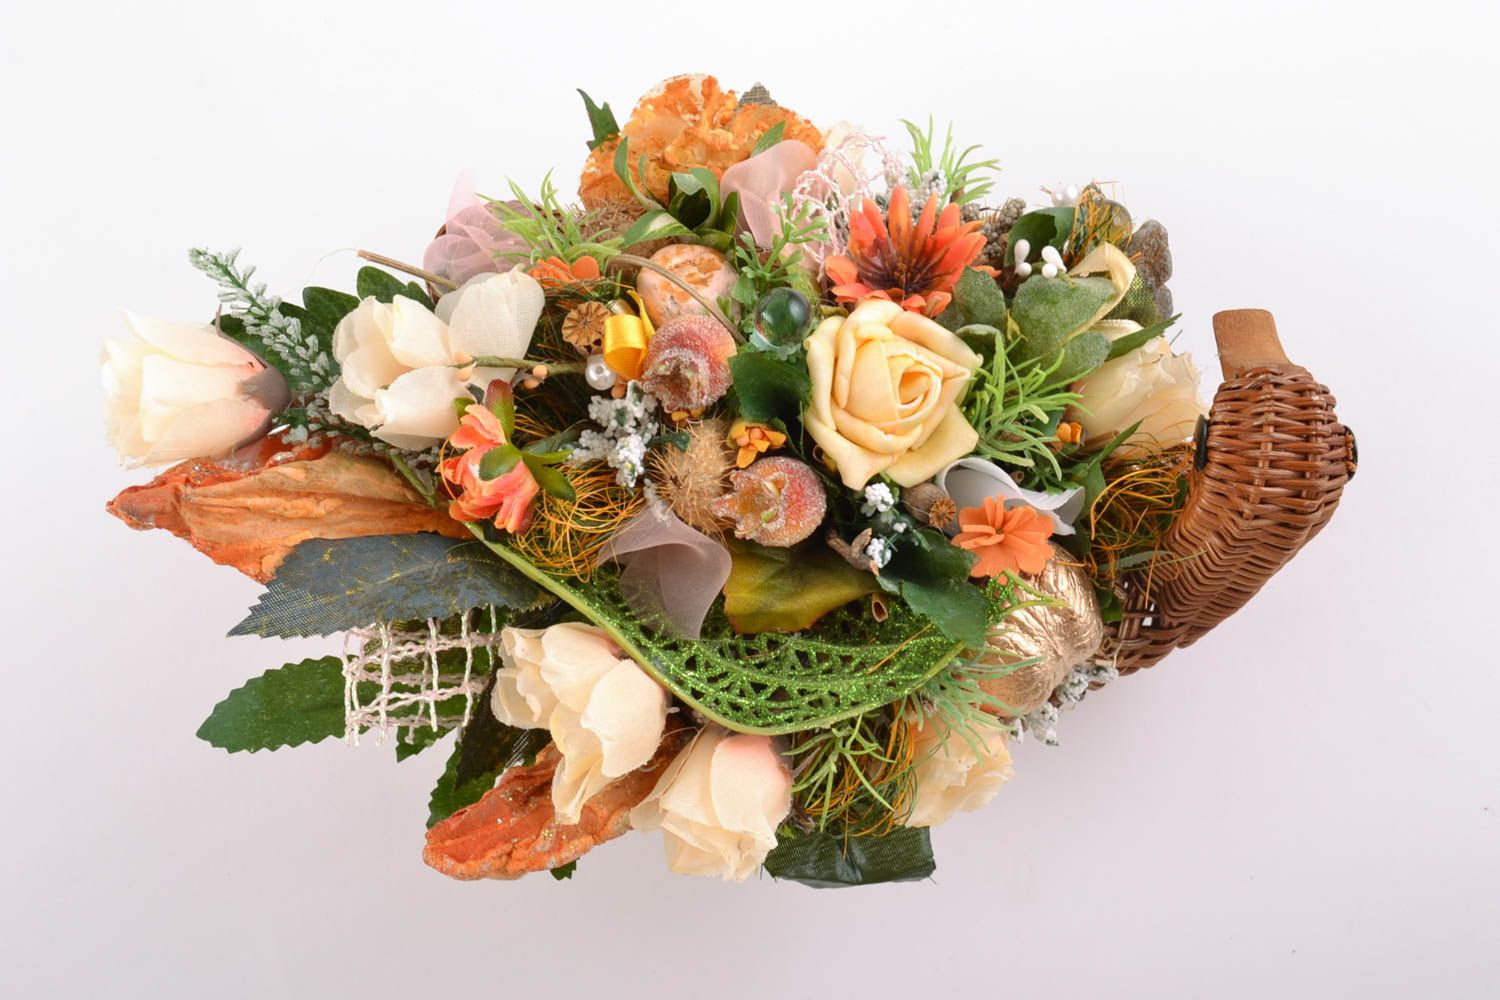 Икебана из искусственных цветов в корзине небольшая красивая хэнд мейд фото 4